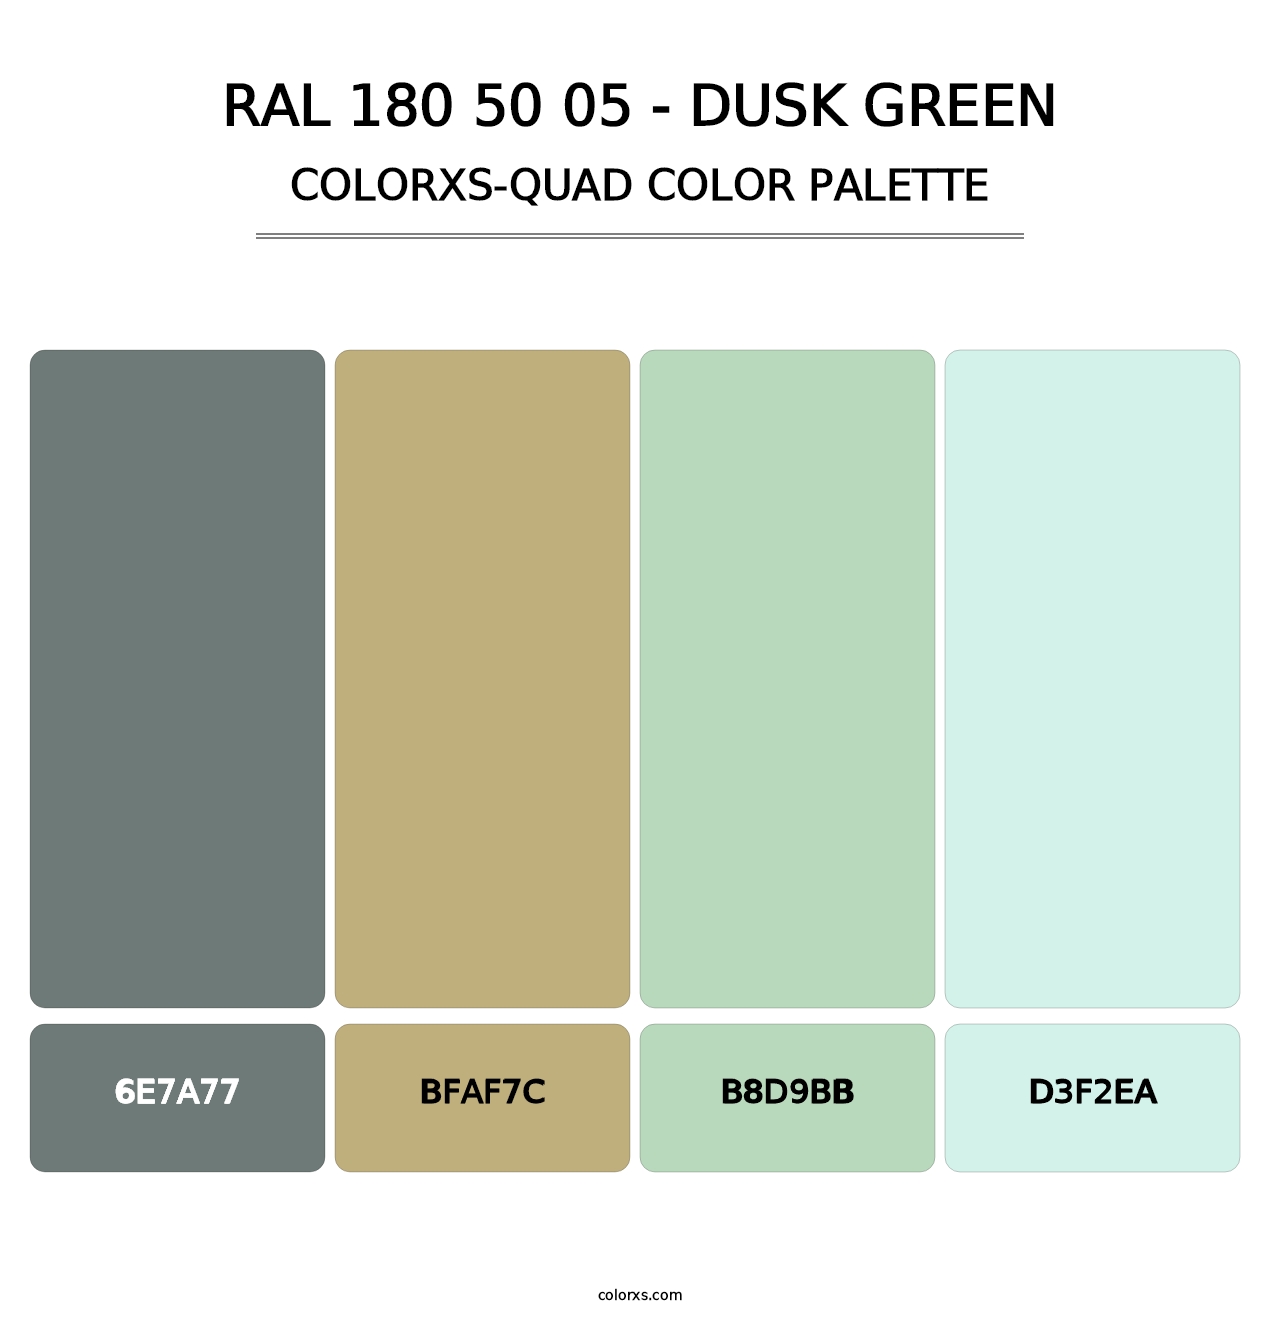 RAL 180 50 05 - Dusk Green - Colorxs Quad Palette